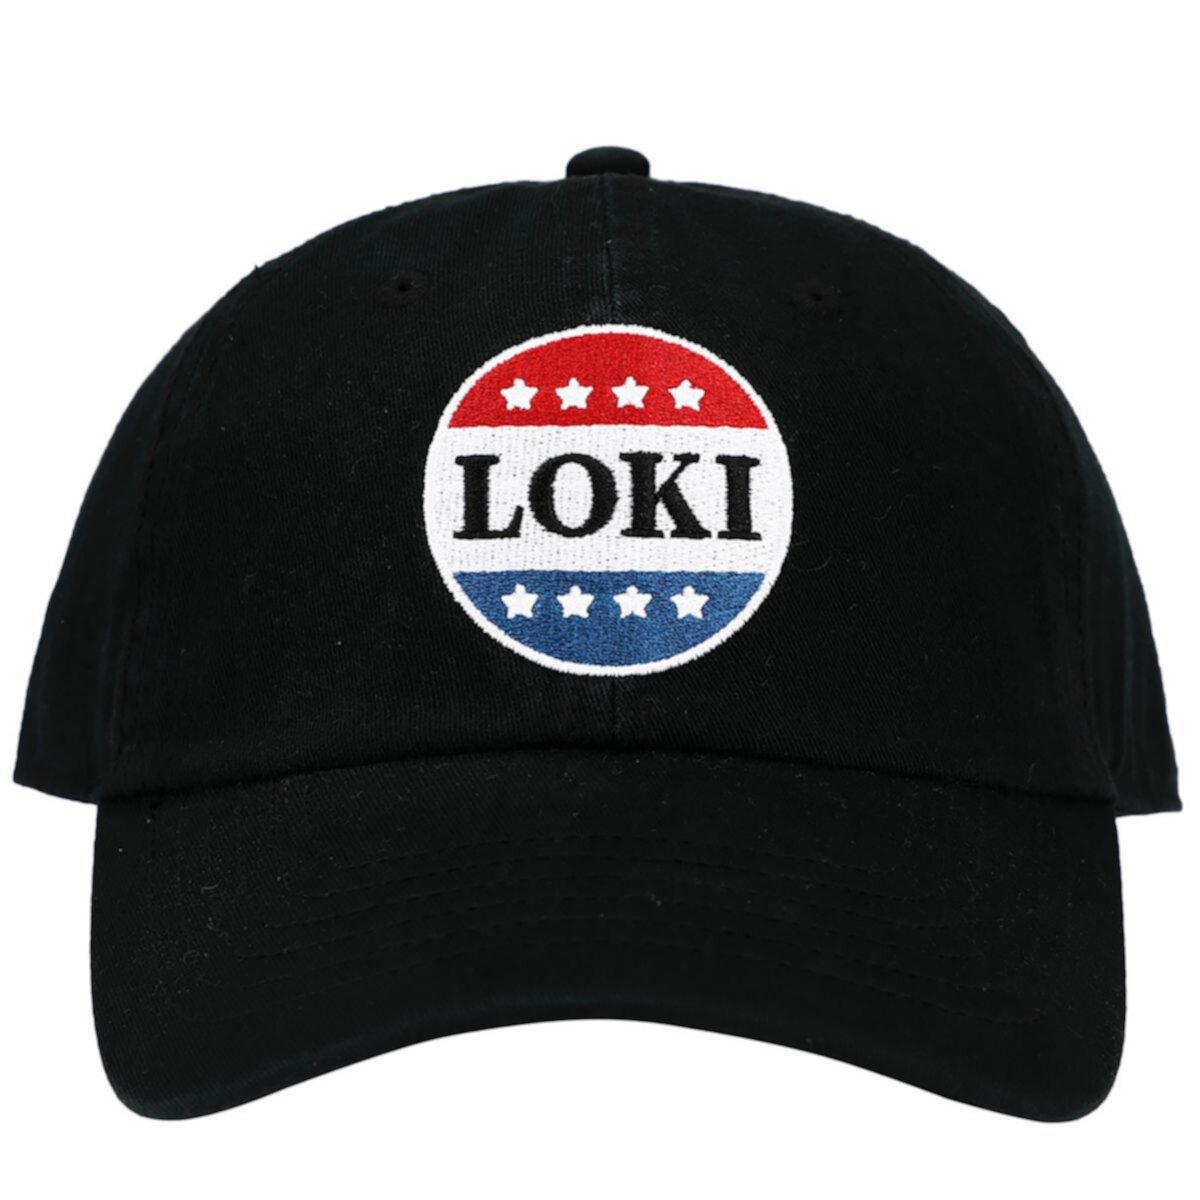 Мужская красно-бело-синяя кепка Loki с пуговицами Licensed Character